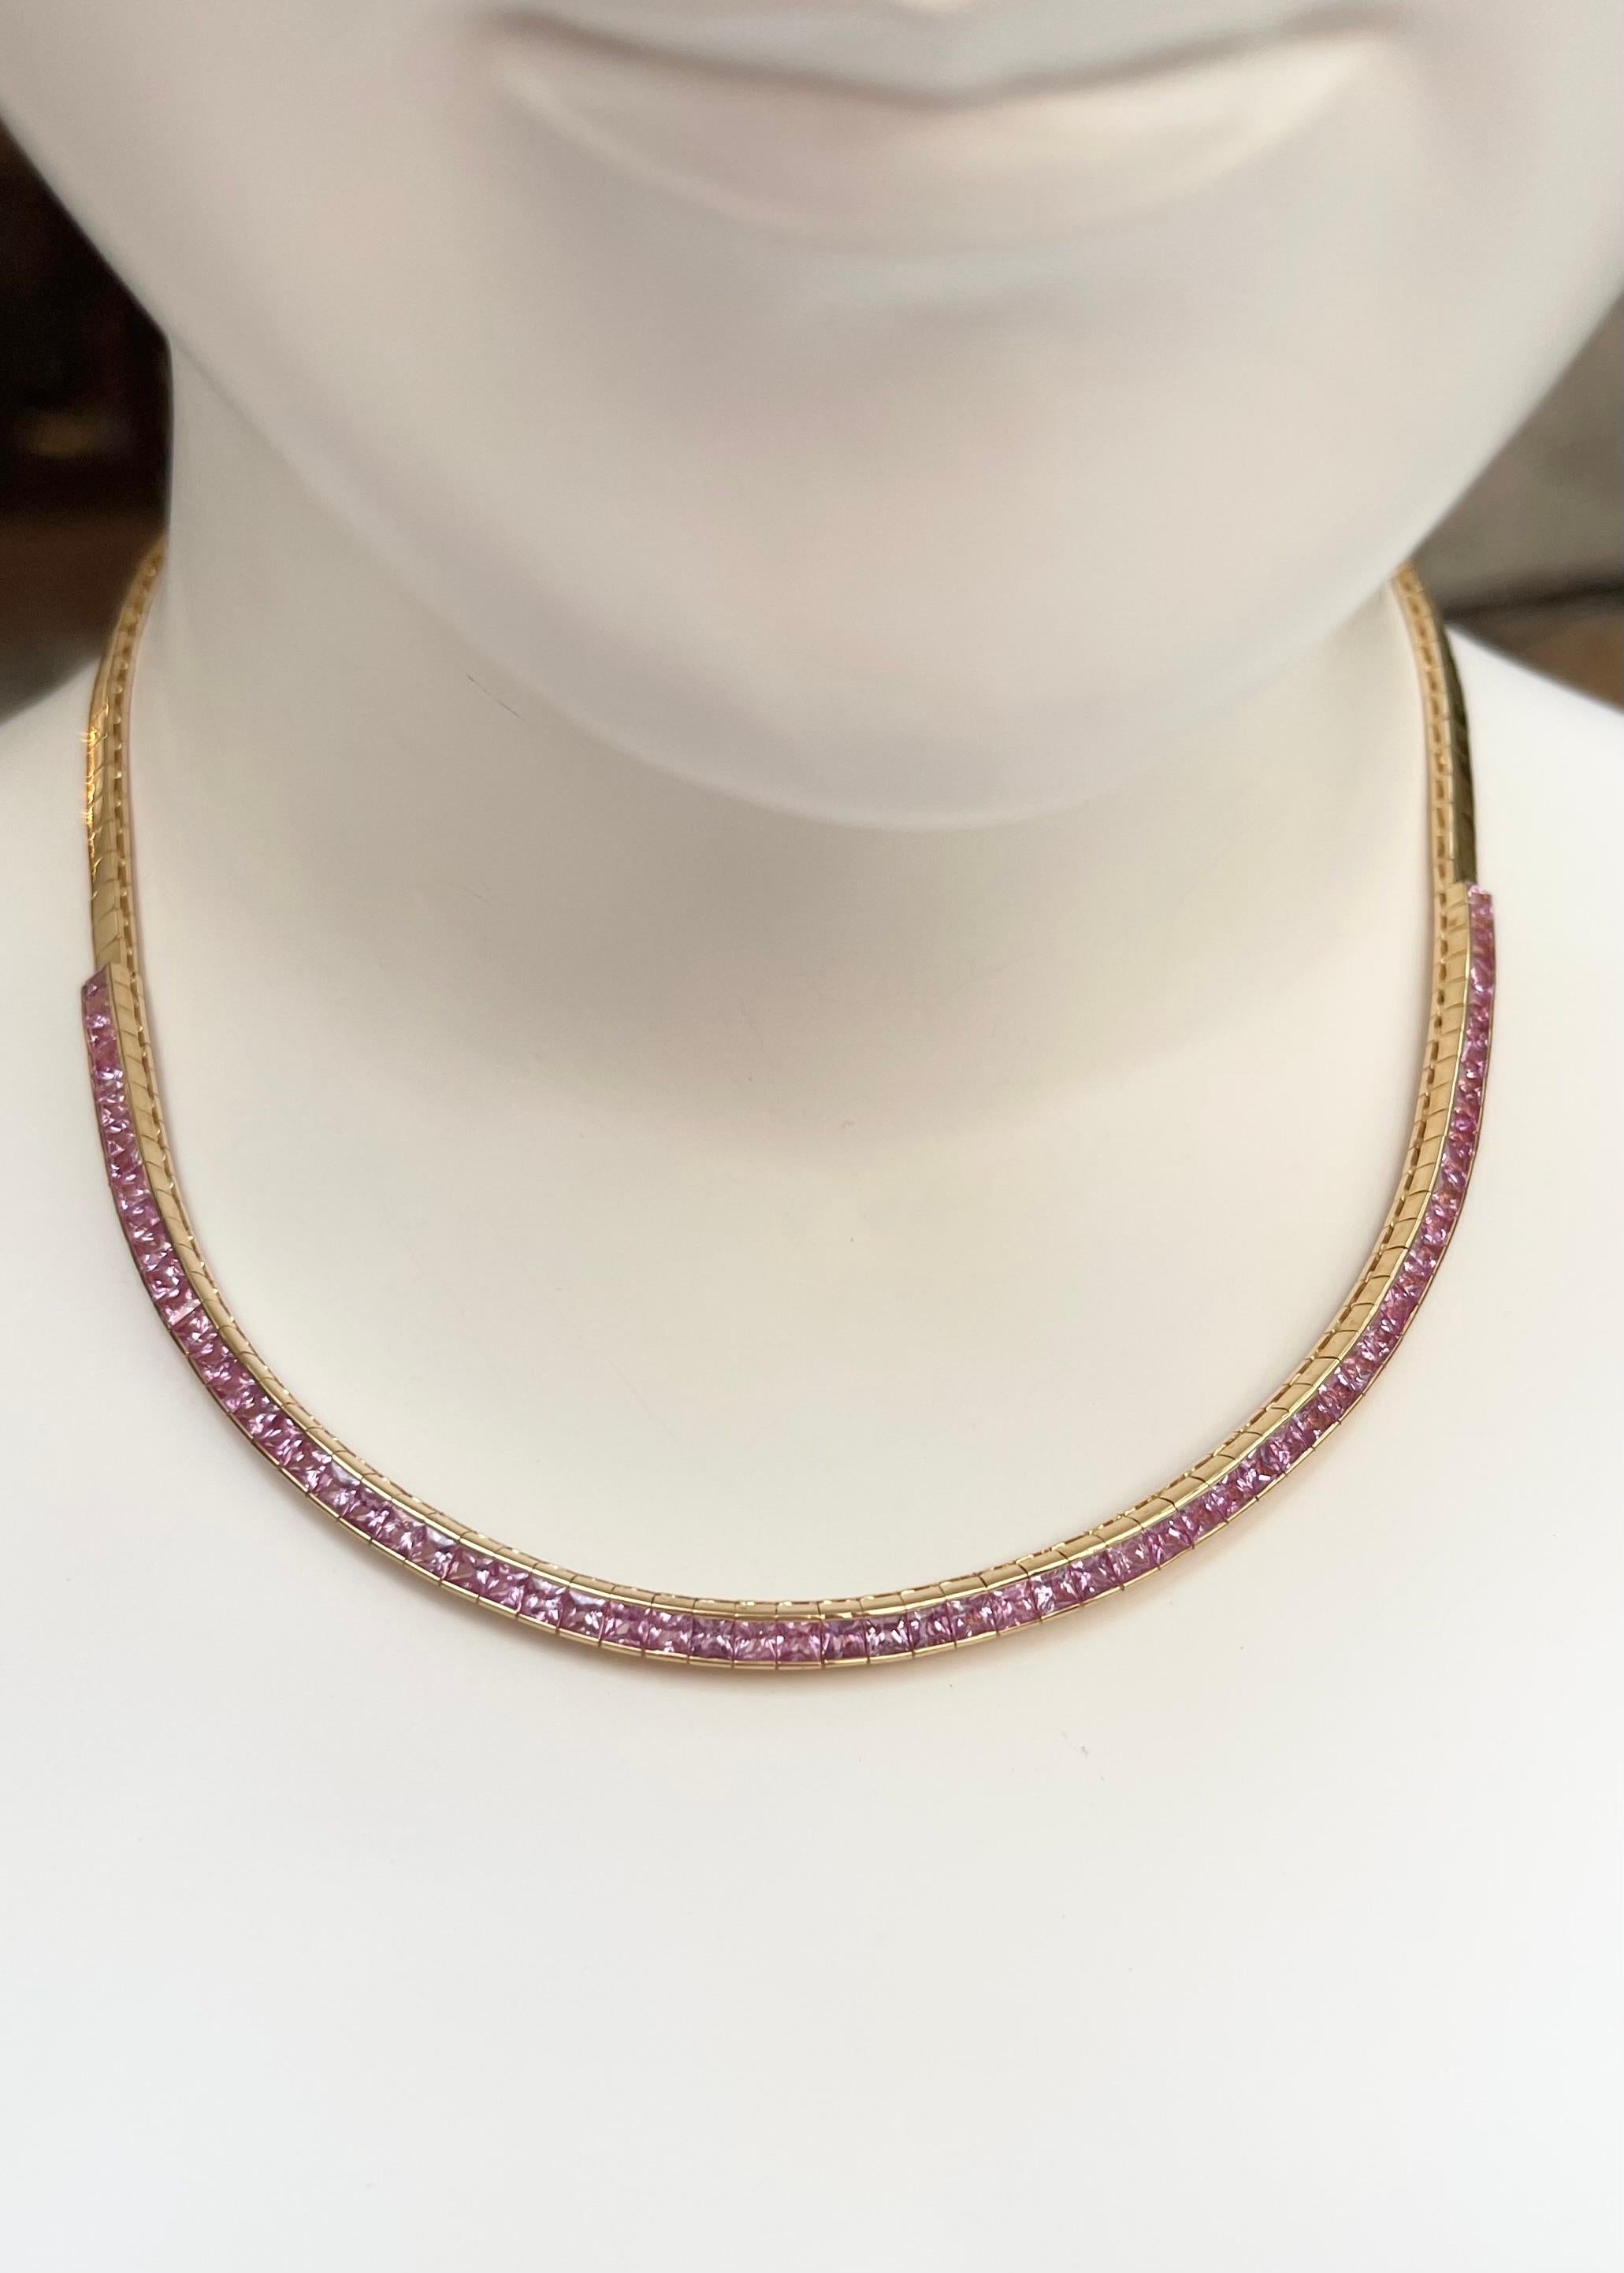 Rosa Saphir 9,09 Karat Halskette in 18K Goldfassung

Breite: 0,4 cm 
Länge: 40,5 cm
Gesamtgewicht: 31,60 Gramm

